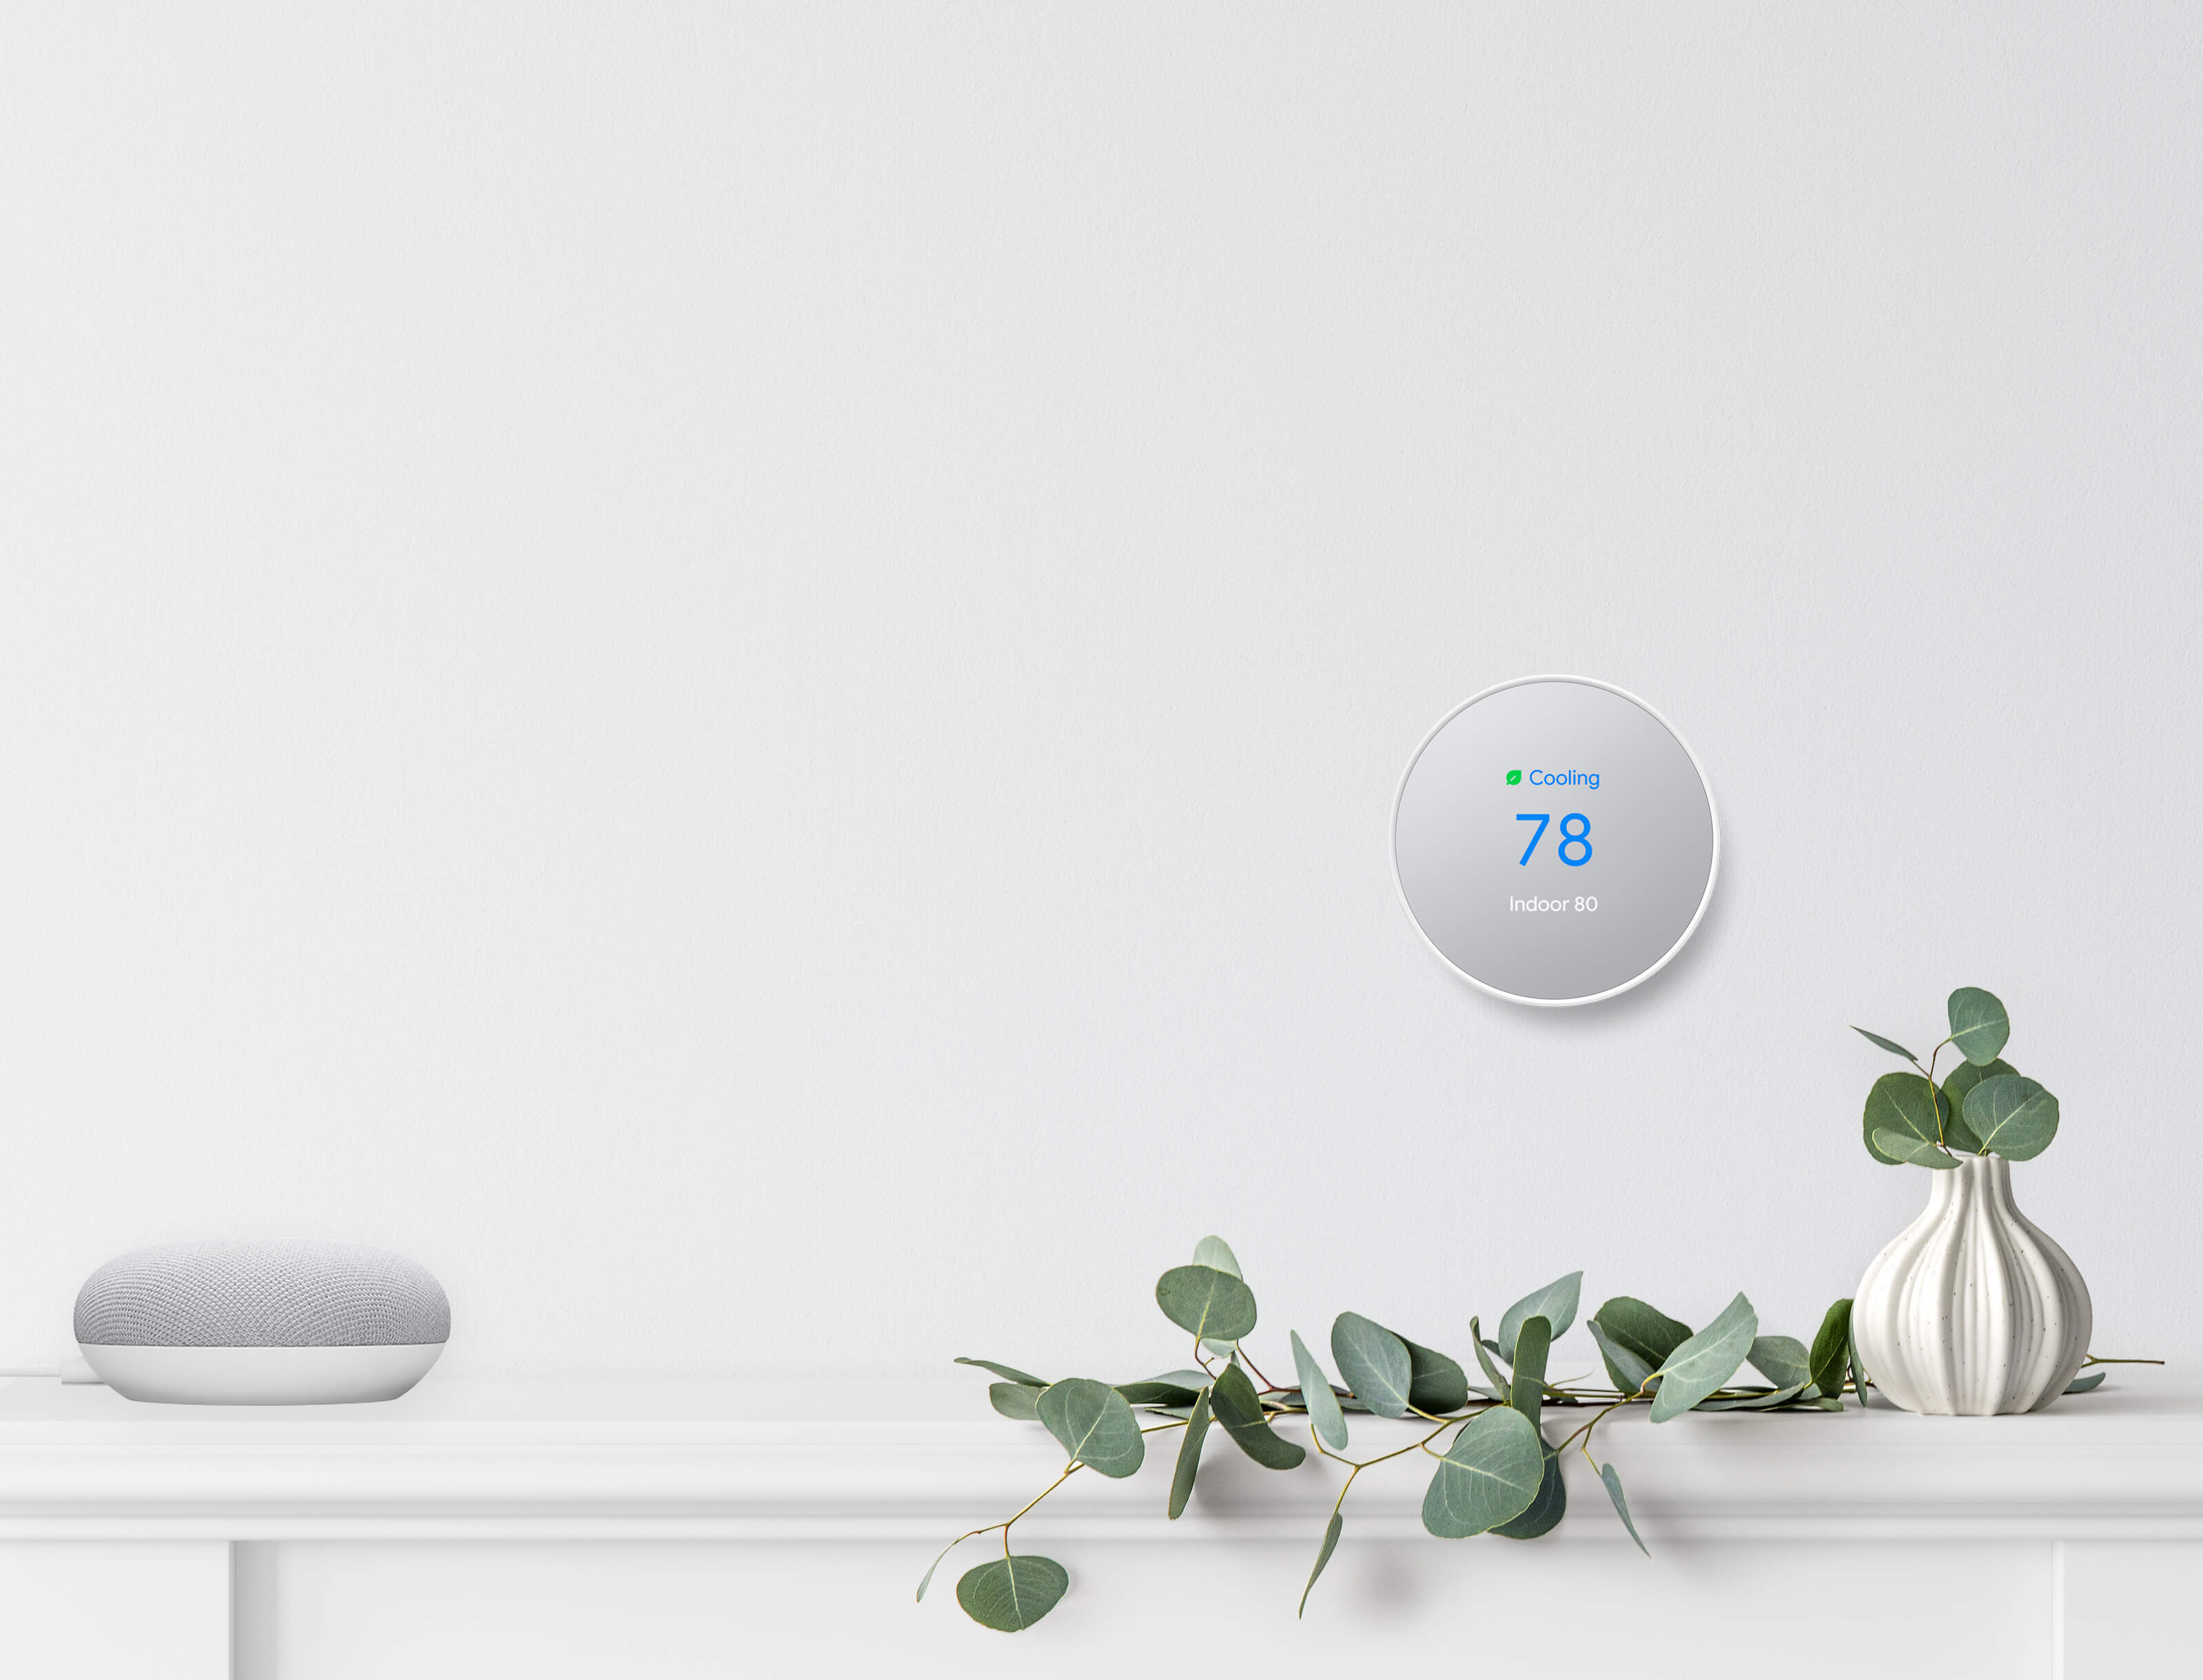 Google Nest smart thermostat